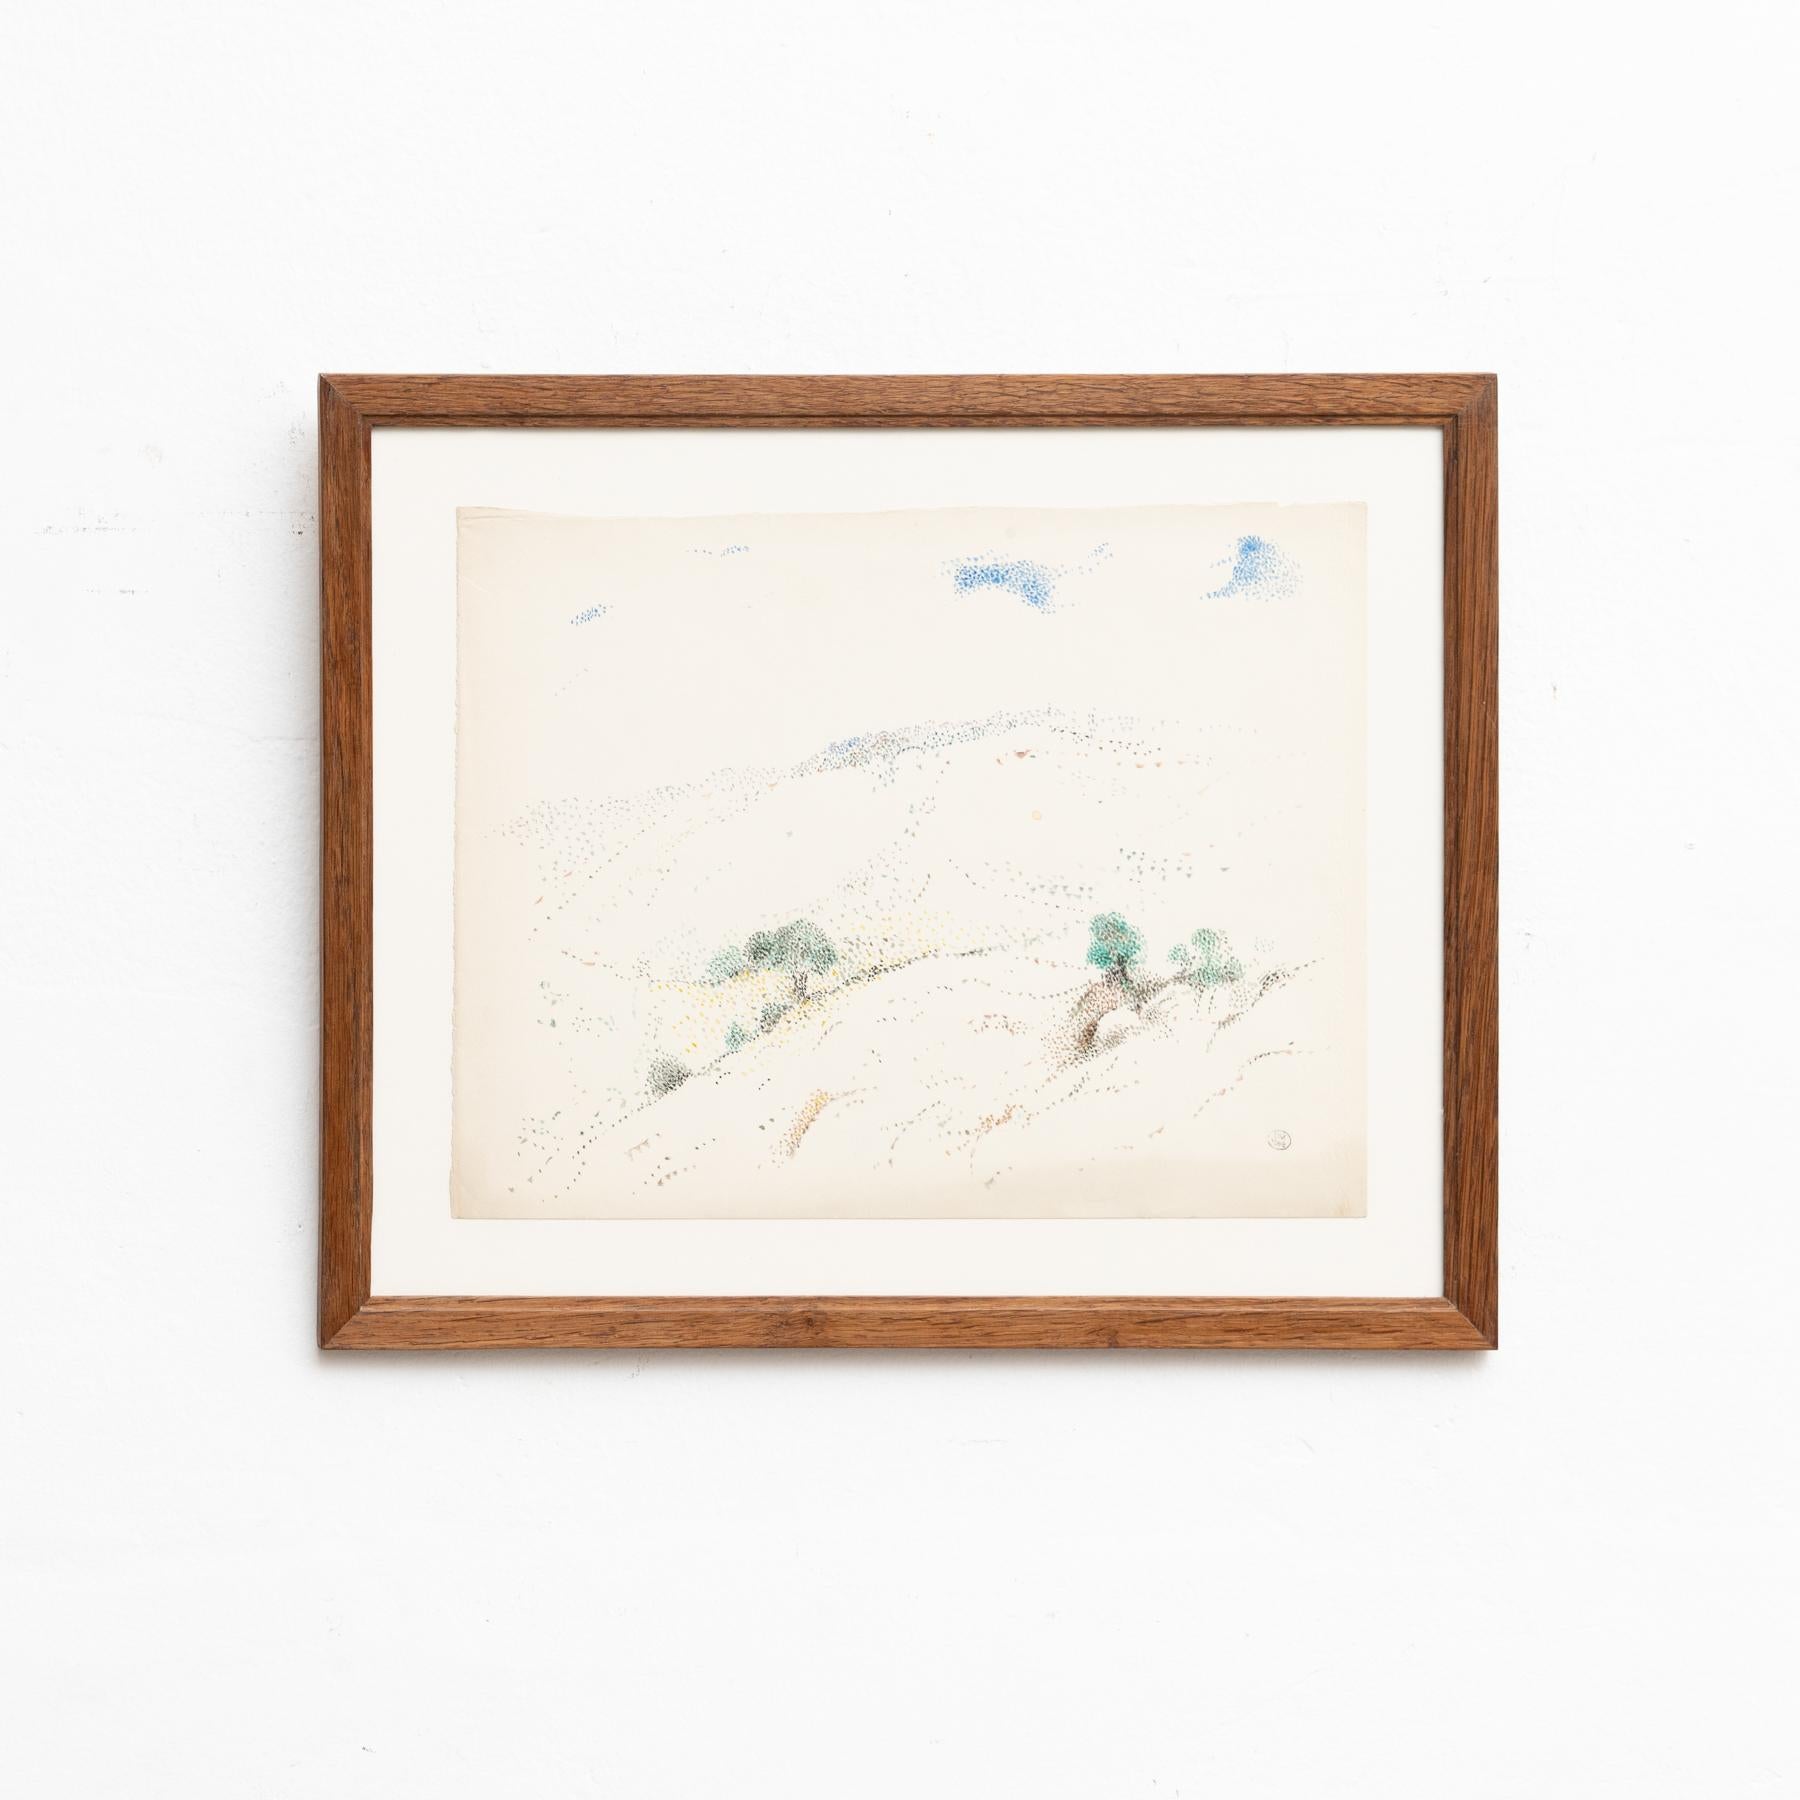 Pointillistische Farbzeichnung von Dora Maar.

Echtheitsstempel der Auktion, die 1998 in Paris stattfand.

Zeichnung auf cremeweißem Papier.

20. Jahrhundert, undatiert.

Gerahmt und signiert.

In gutem Originalzustand mit geringen alters-